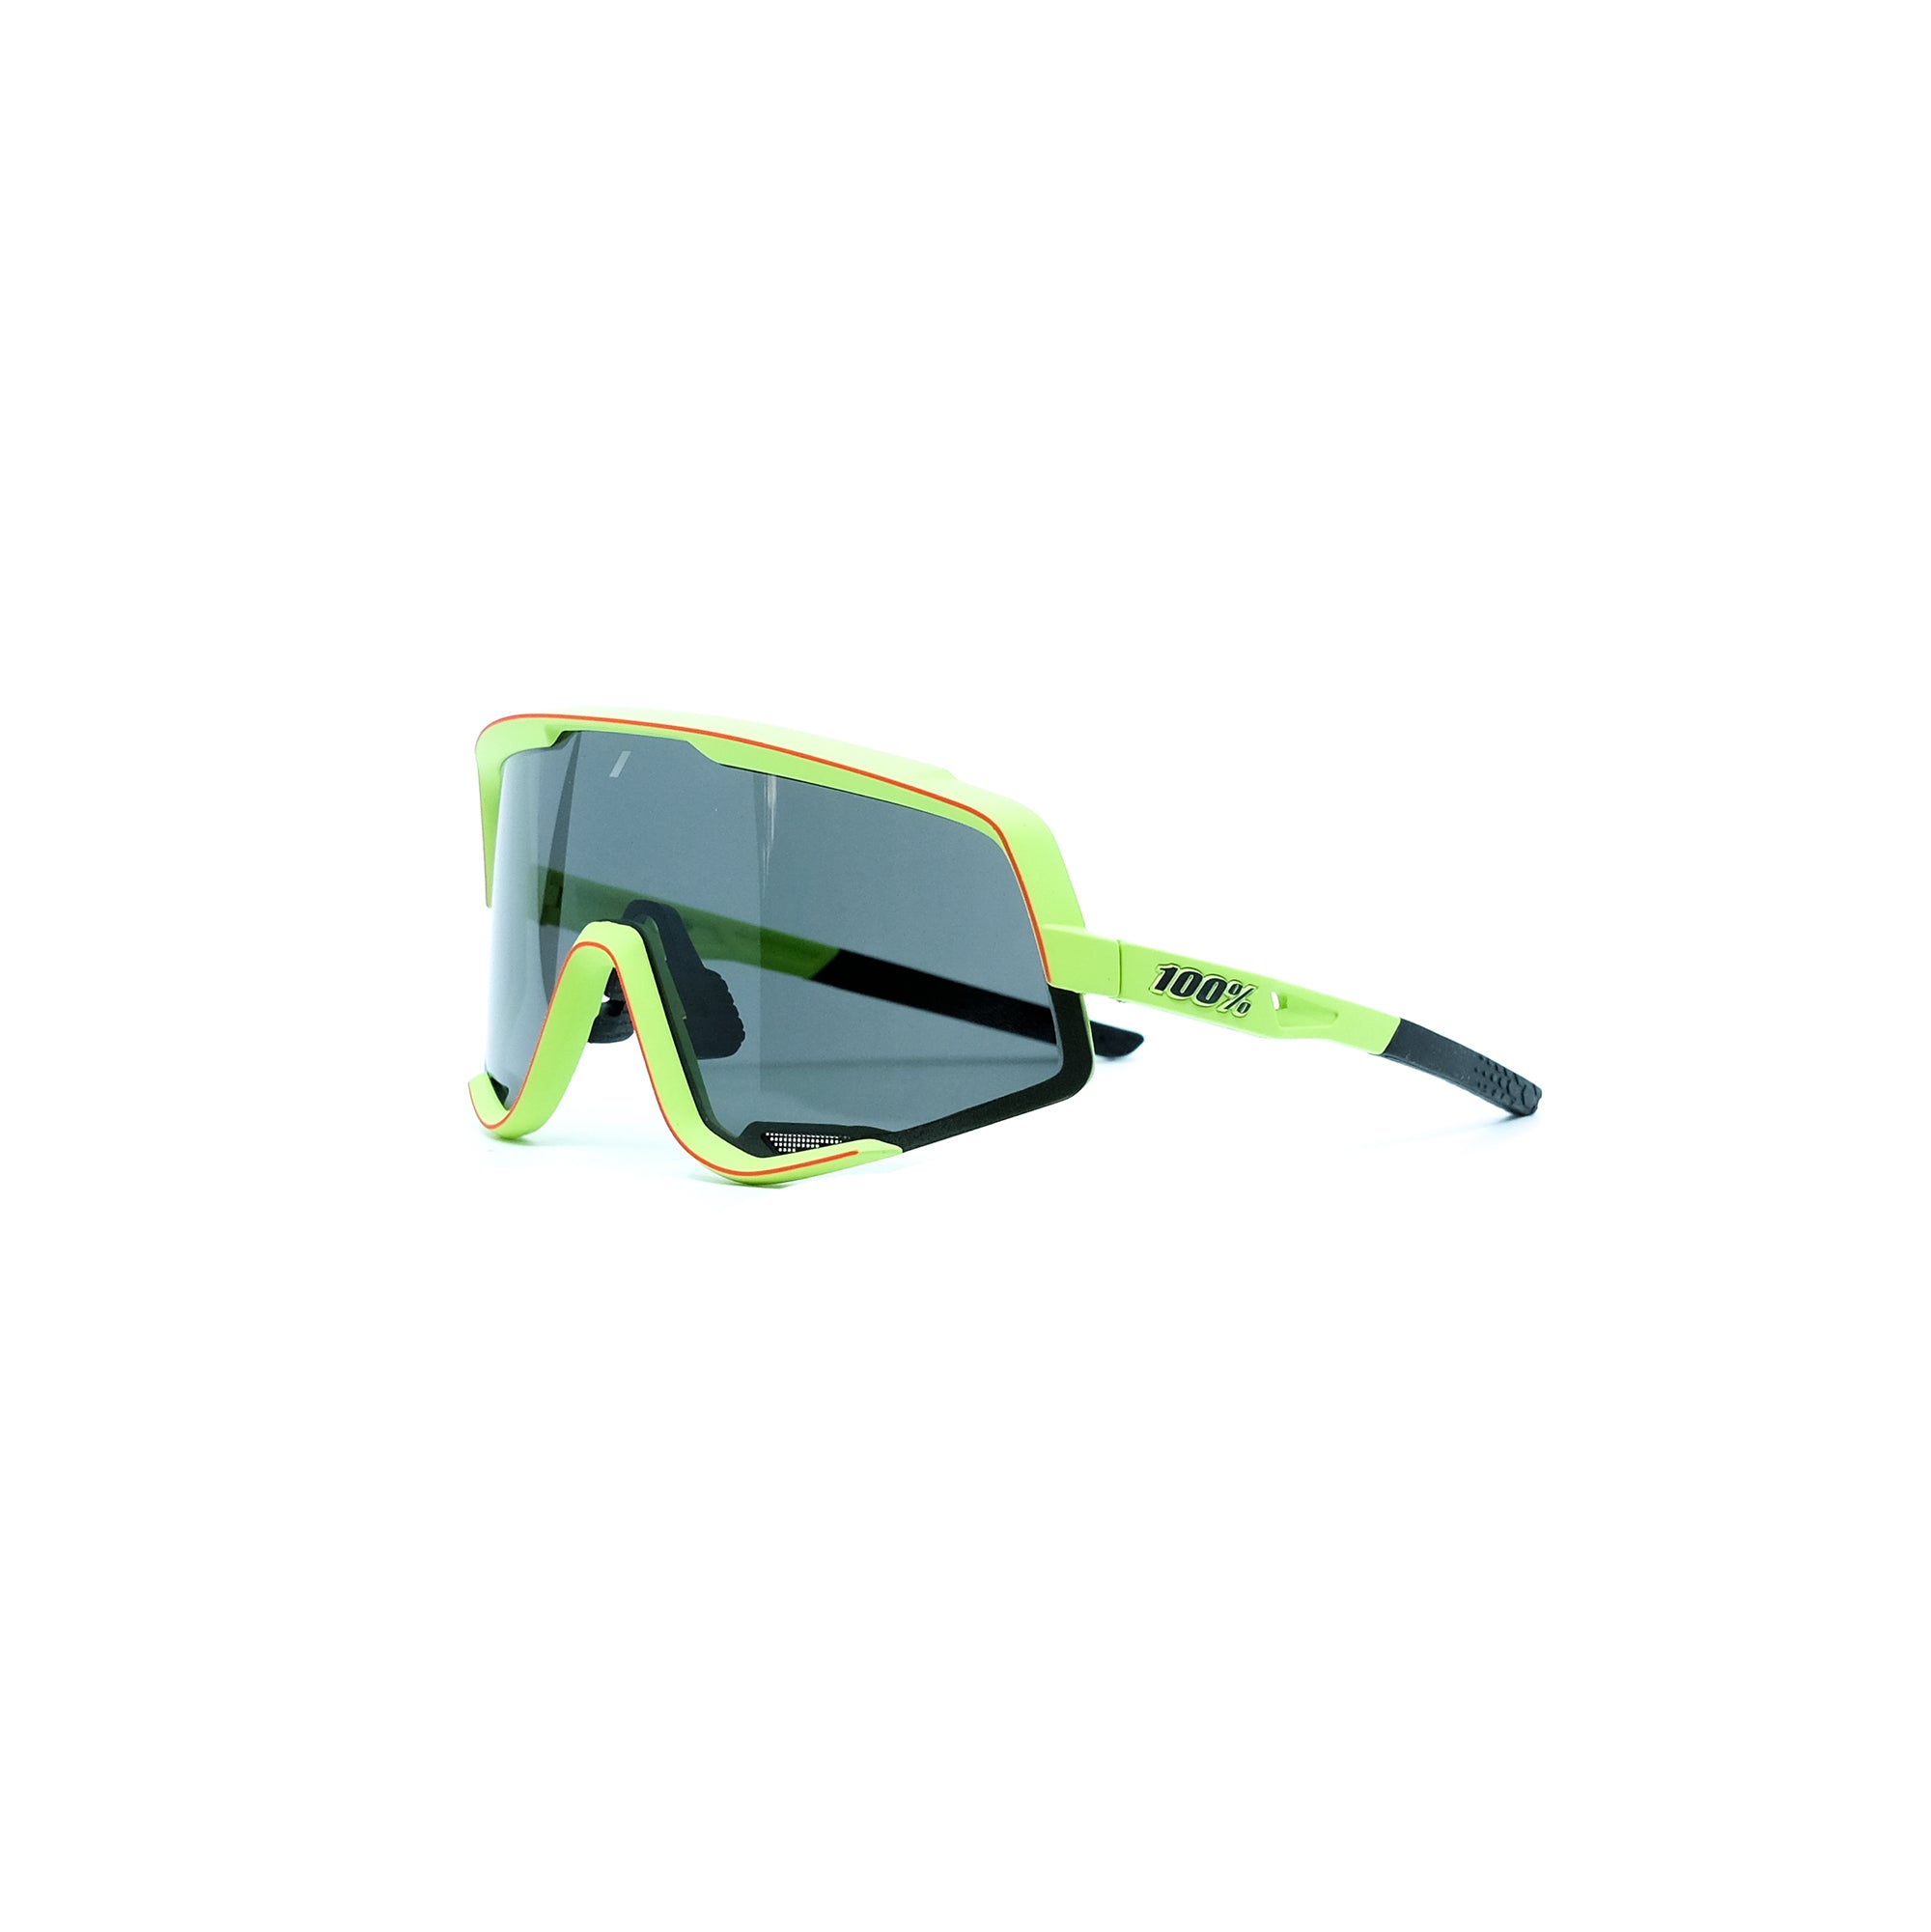 100% Glendale Sunglasses - Soft Tact Washed Out Neon Yellow (Smoke)